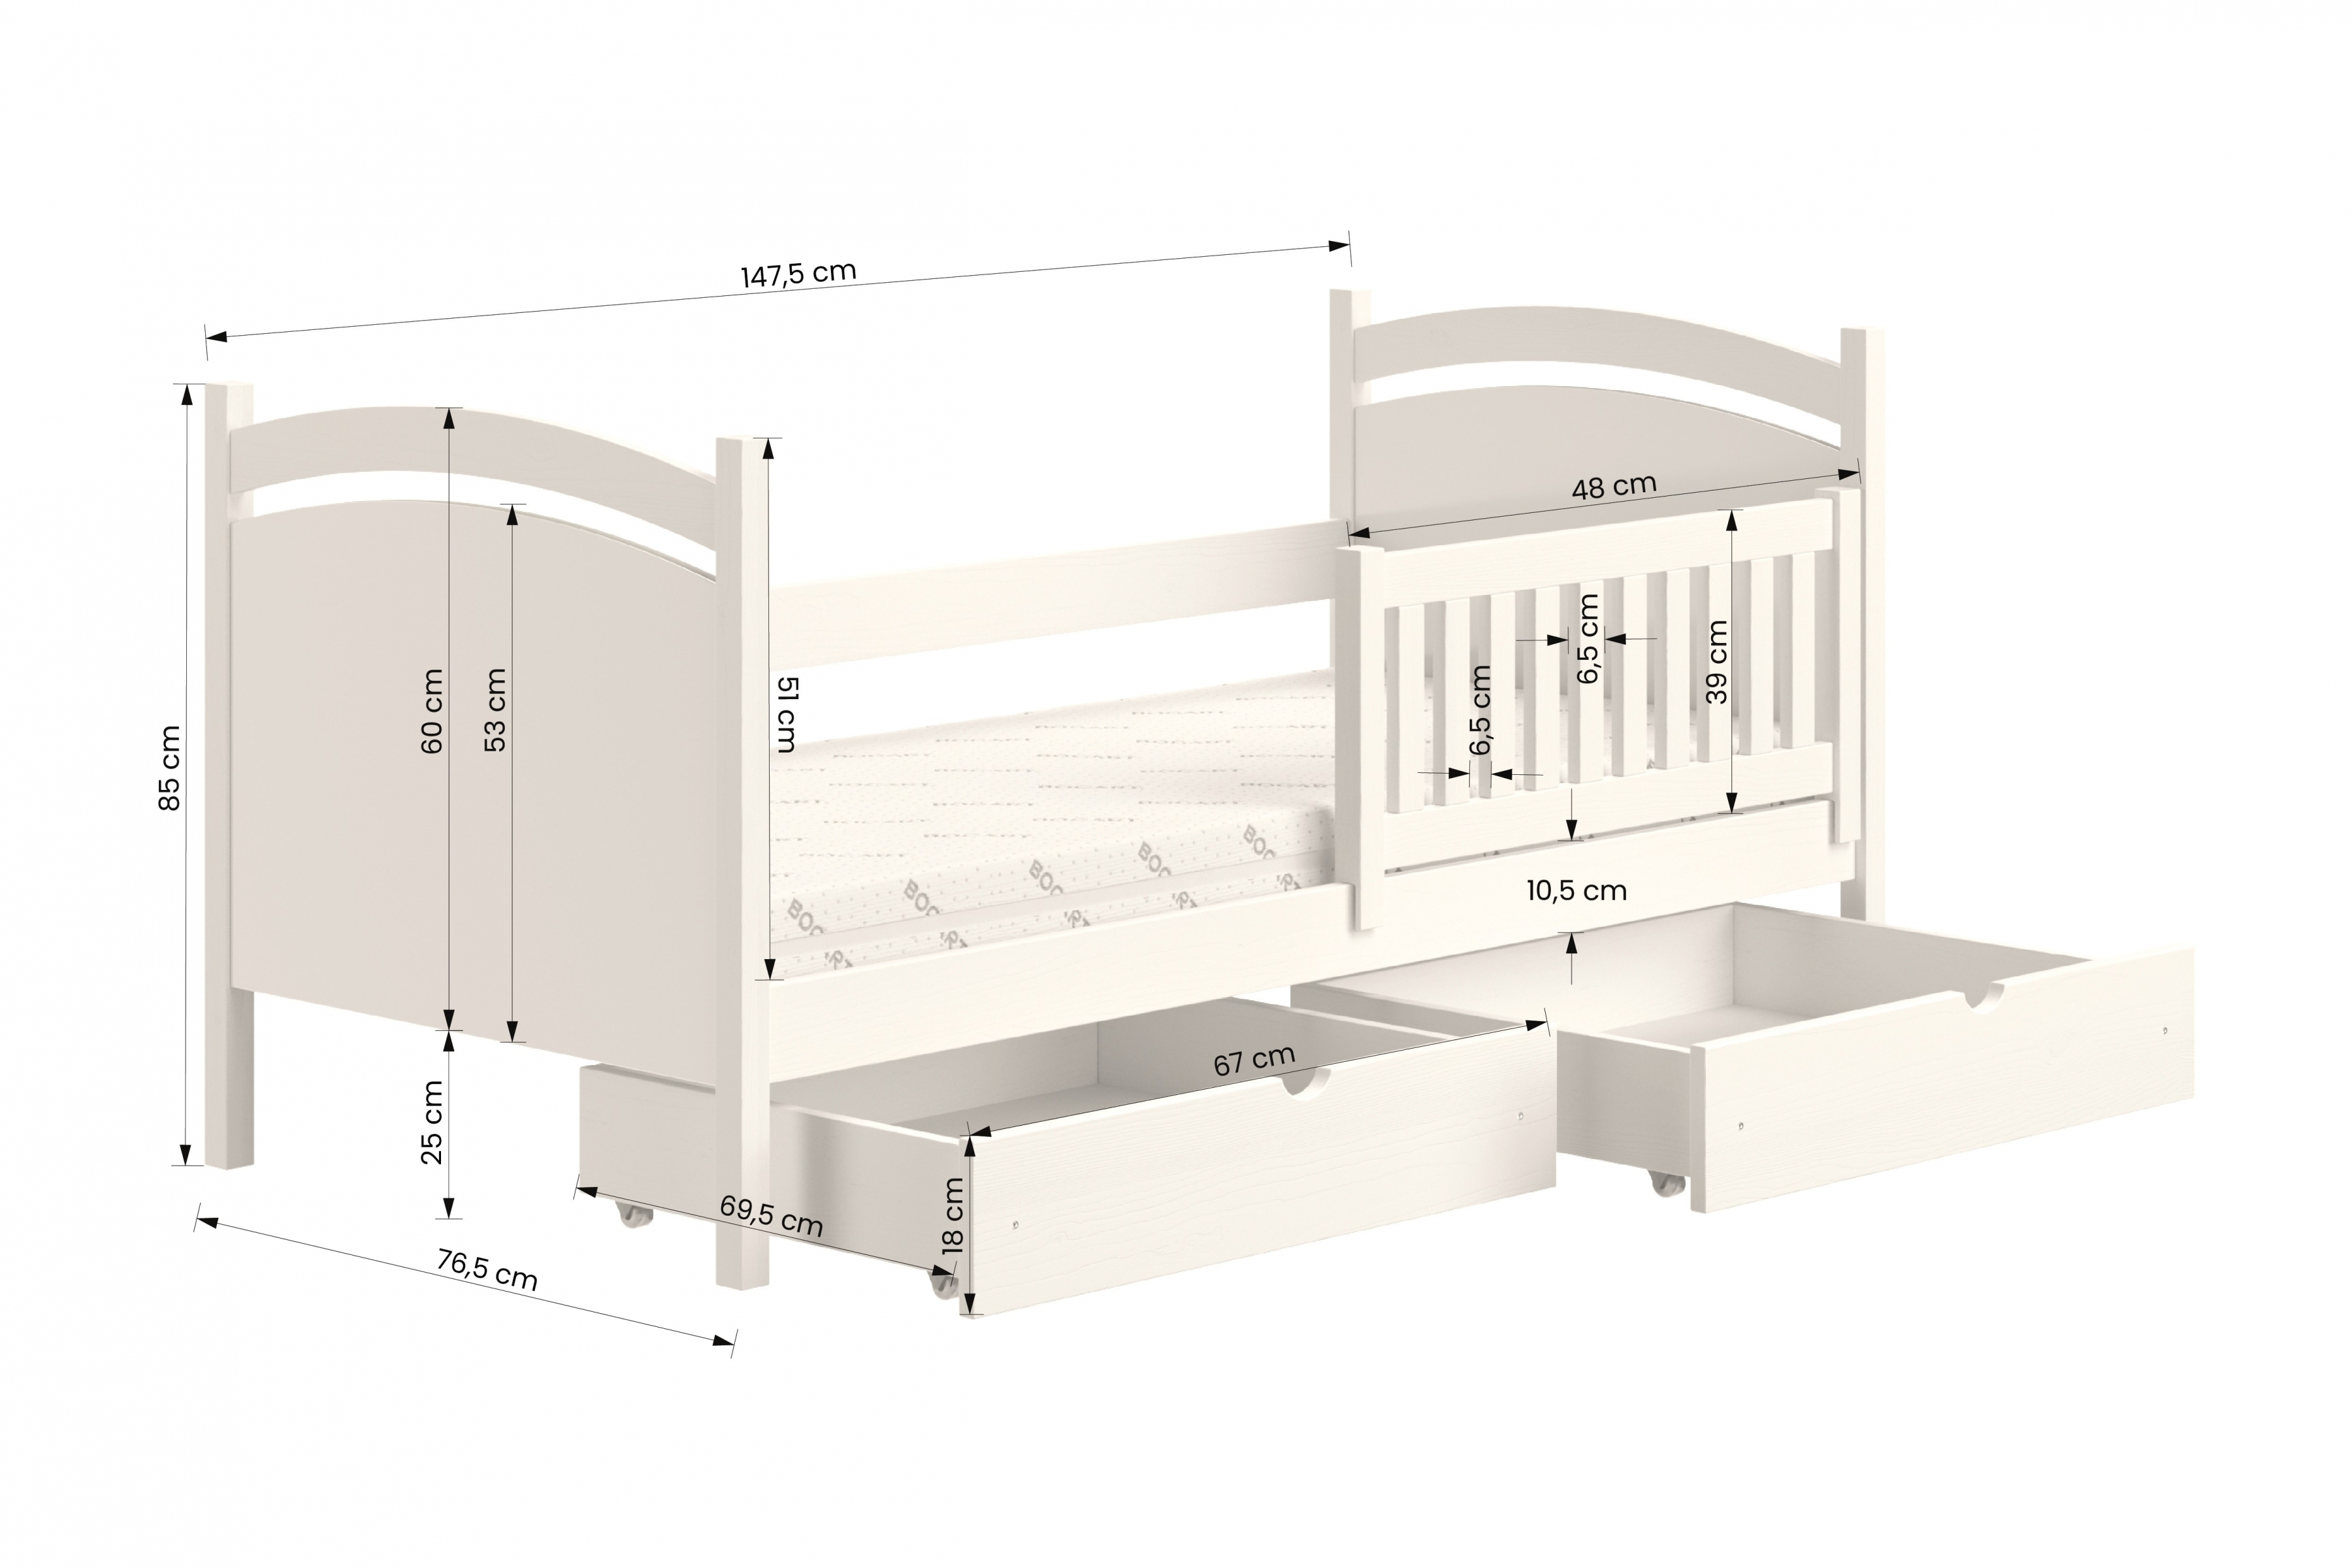 Detská posteľ s tabuľou Amely - Farba šedý, rozmer 70x140 Posteľ dzieciece z tablica suchoscieralna Amely - Rozmery